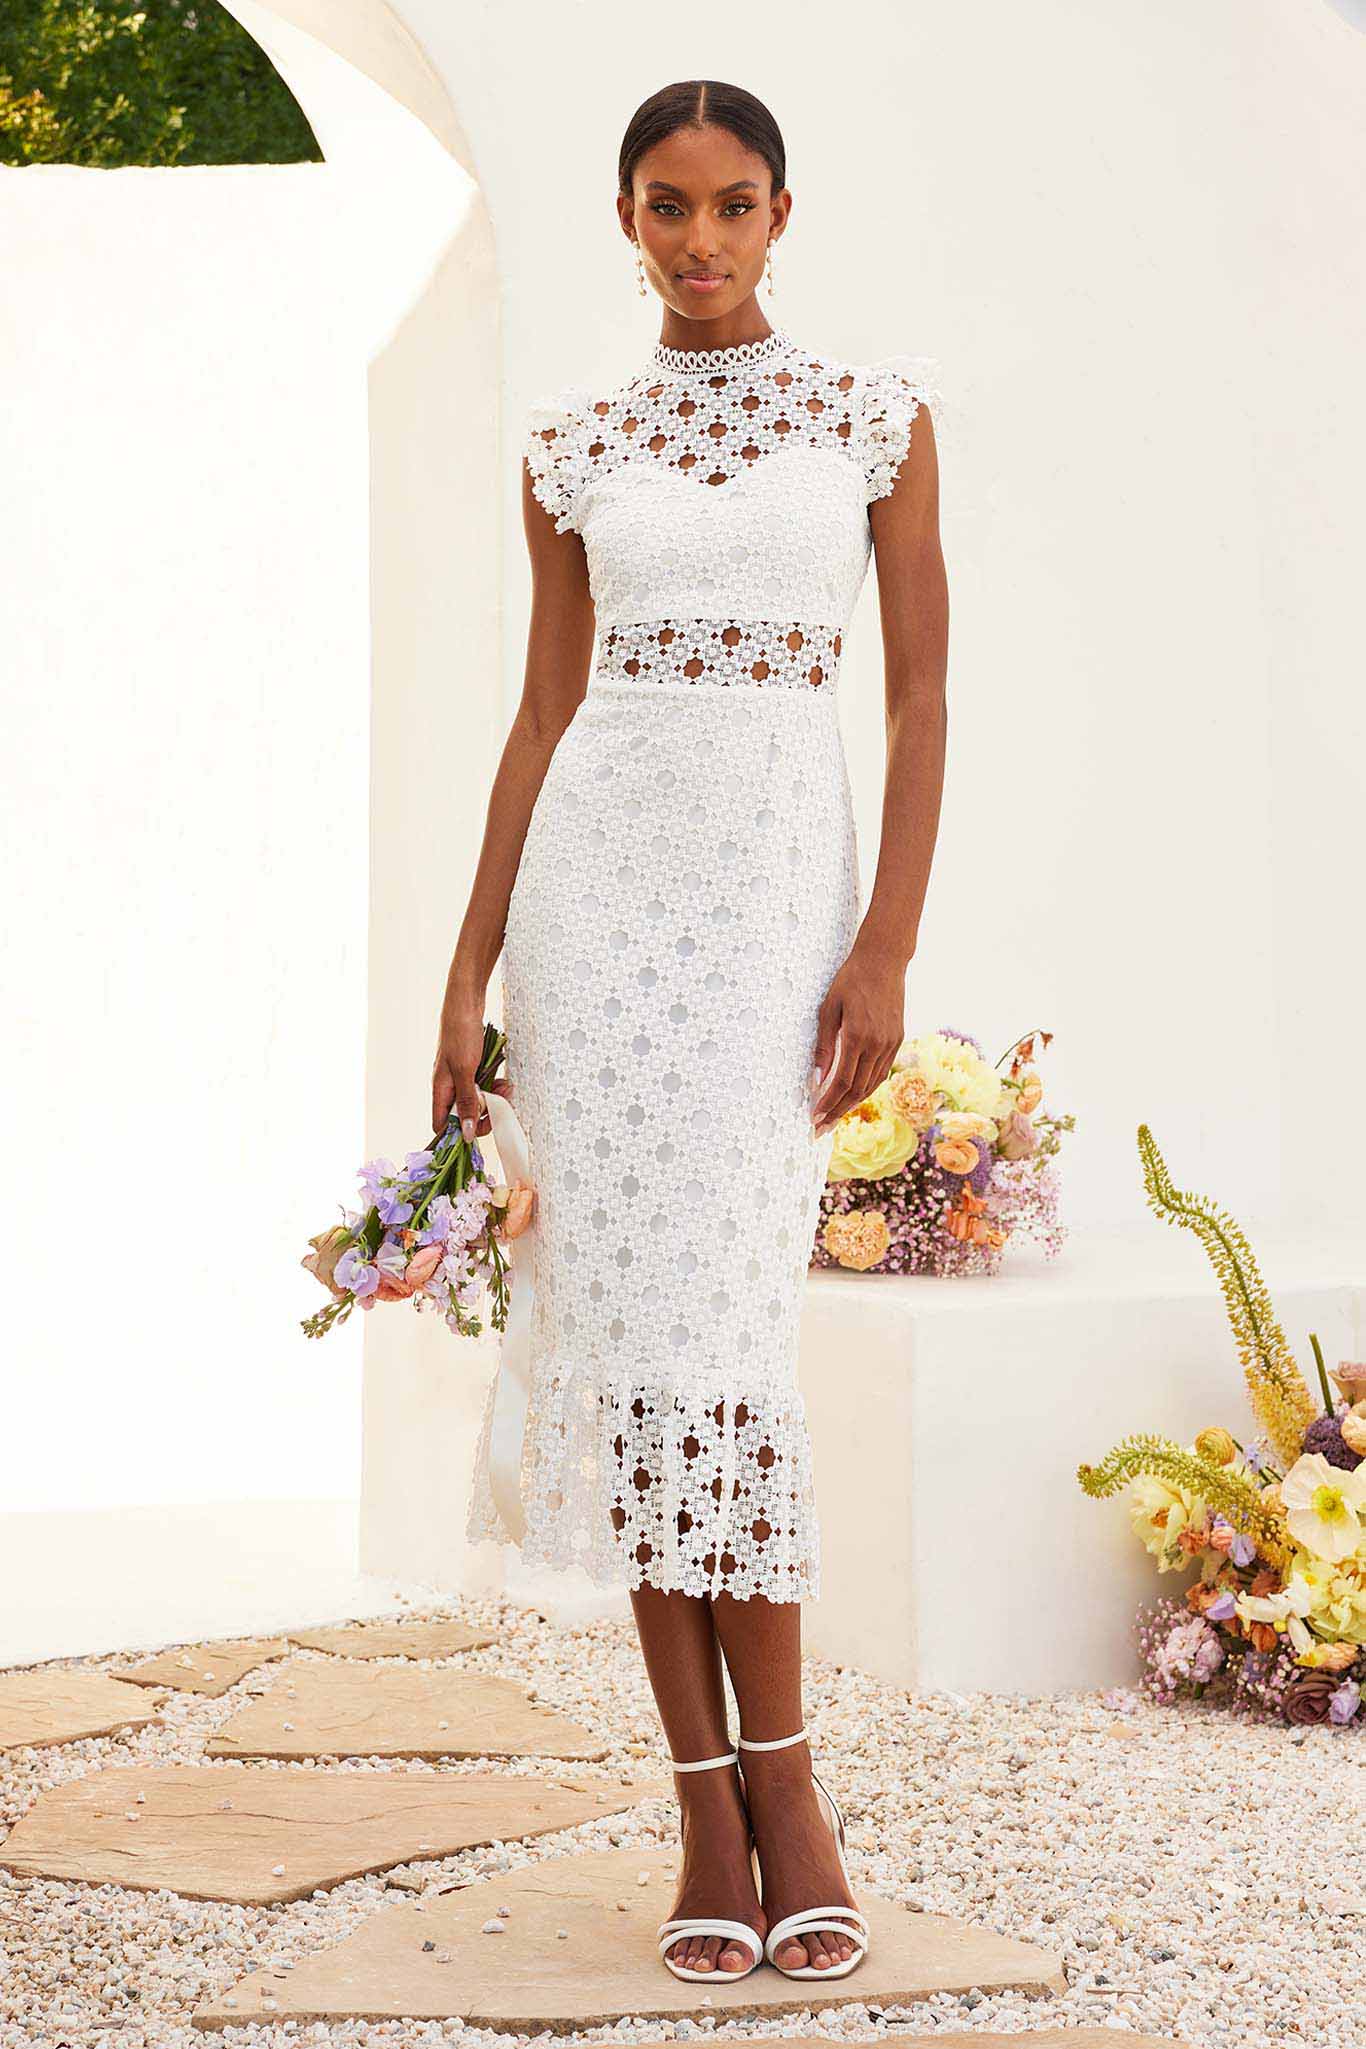 white lace midi dress